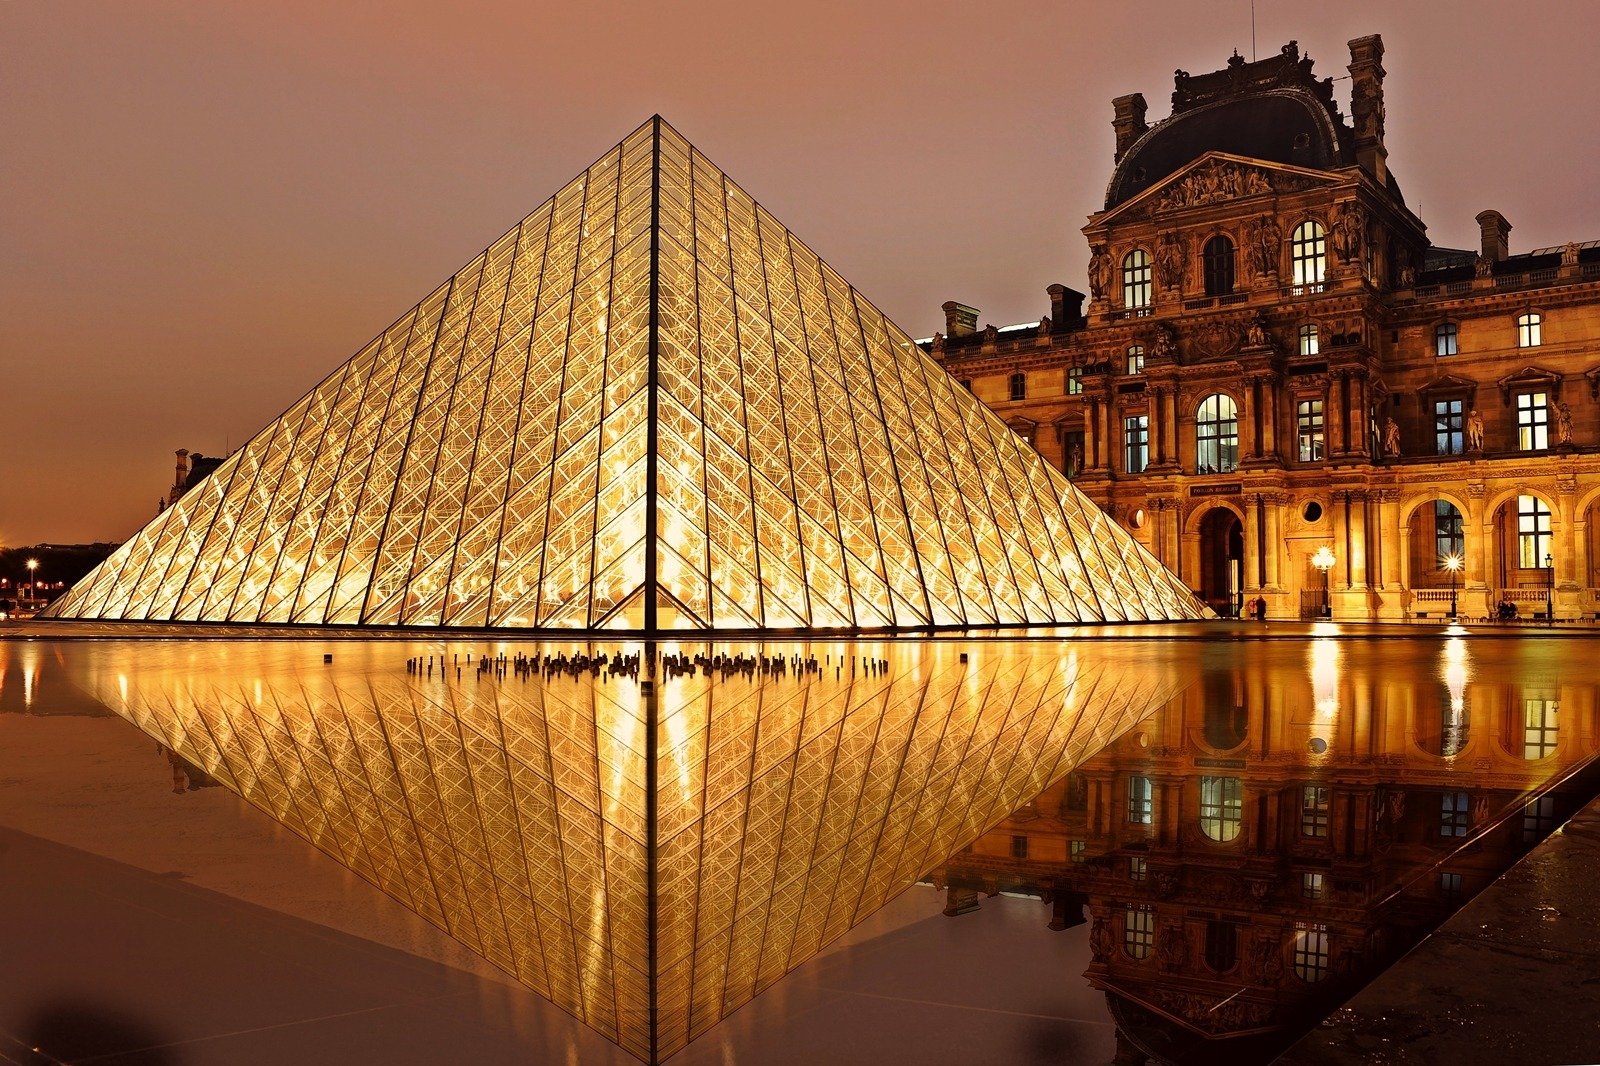 Louvre in Paris, France